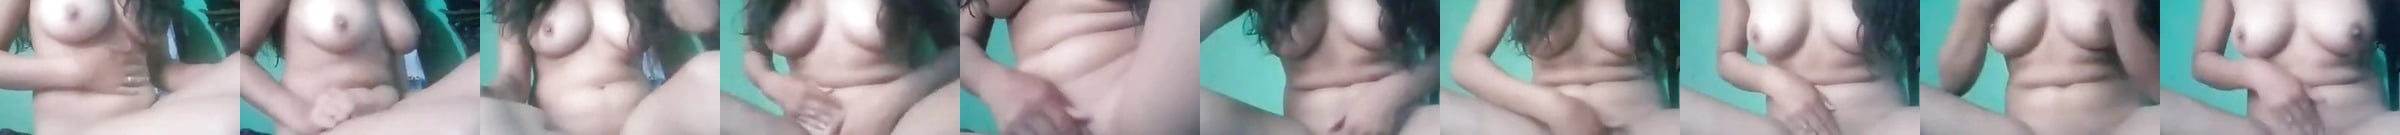 Destaque Botão De Rosa Vídeos Porno Xhamster